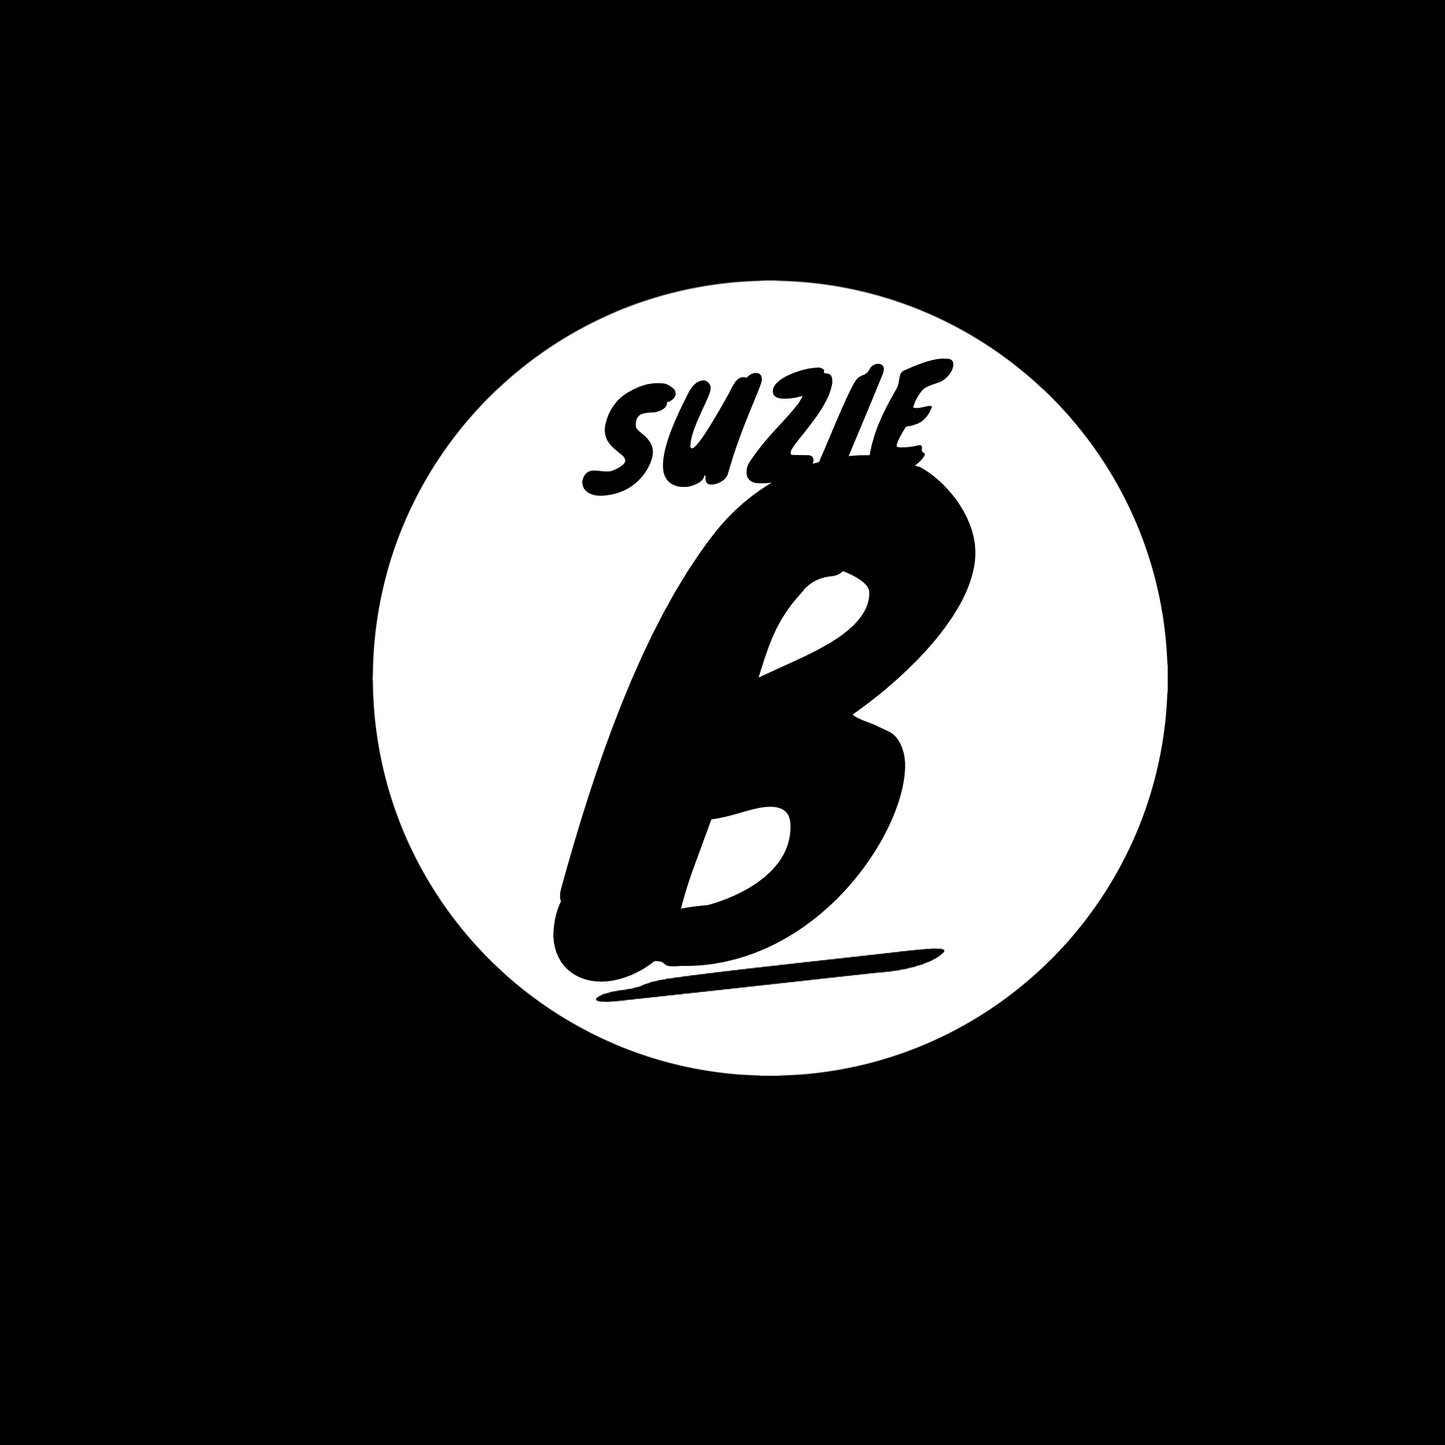 Suzie B